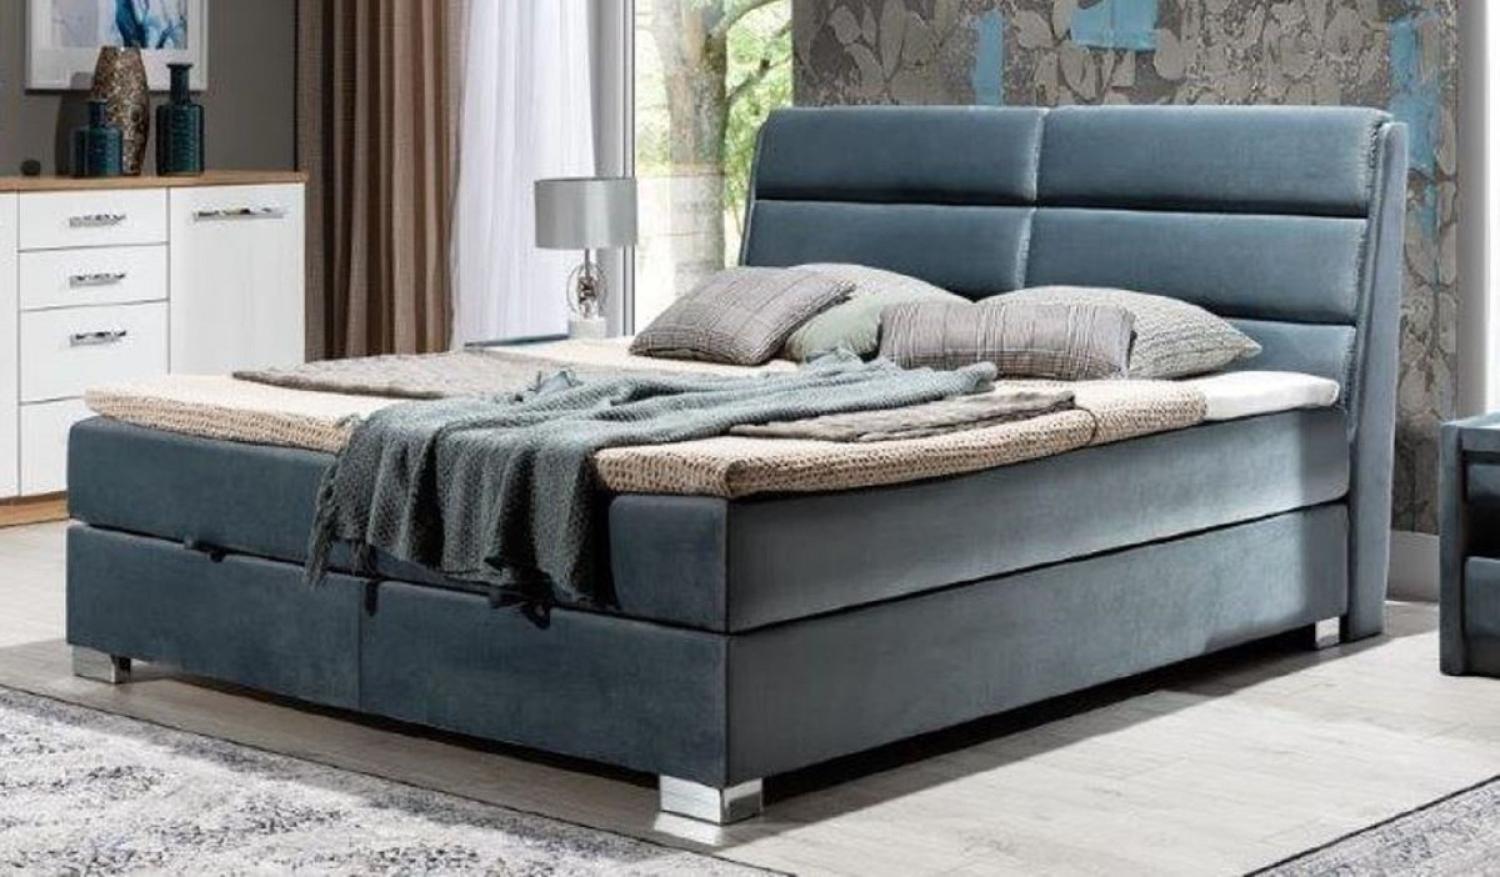 Casa Padrino Luxus Doppelbett Grau / Silber - Modernes Massivholz Bett mit Kopfteil und Matratze - Moderne Schlafzimmer Möbel - Luxus Kollektion Bild 1